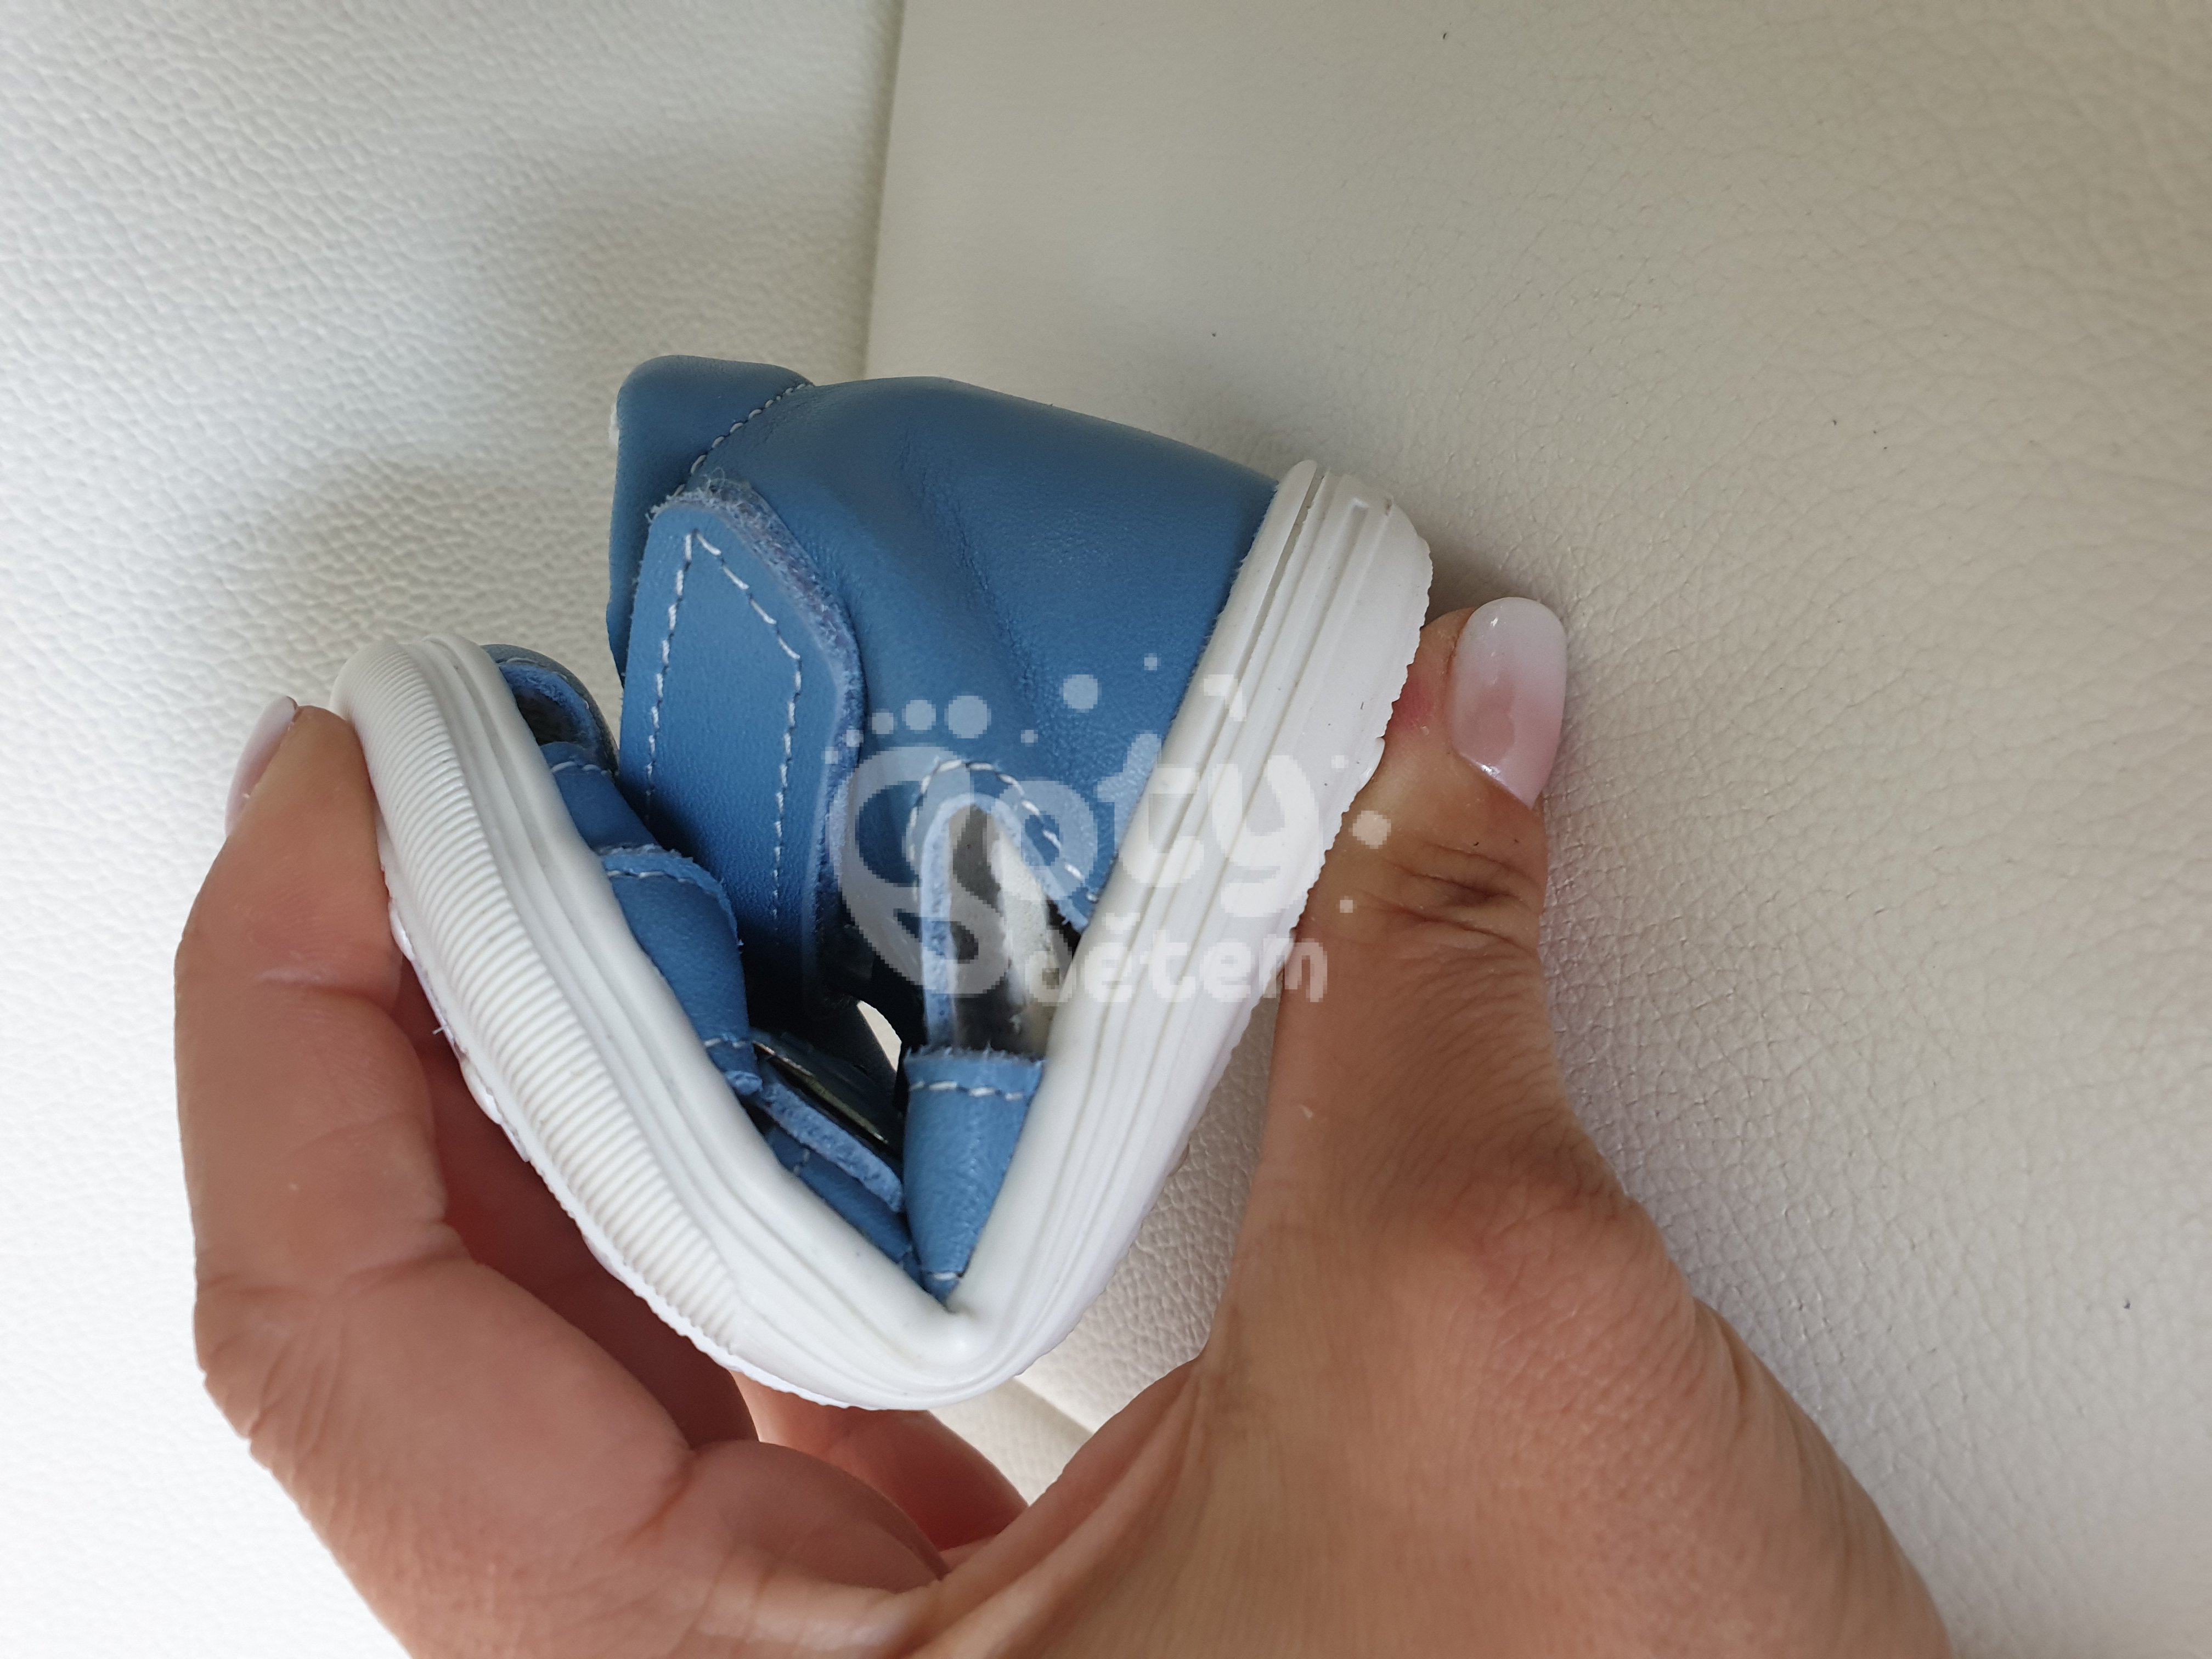 Jonap kožené sandálky 009 M modrá